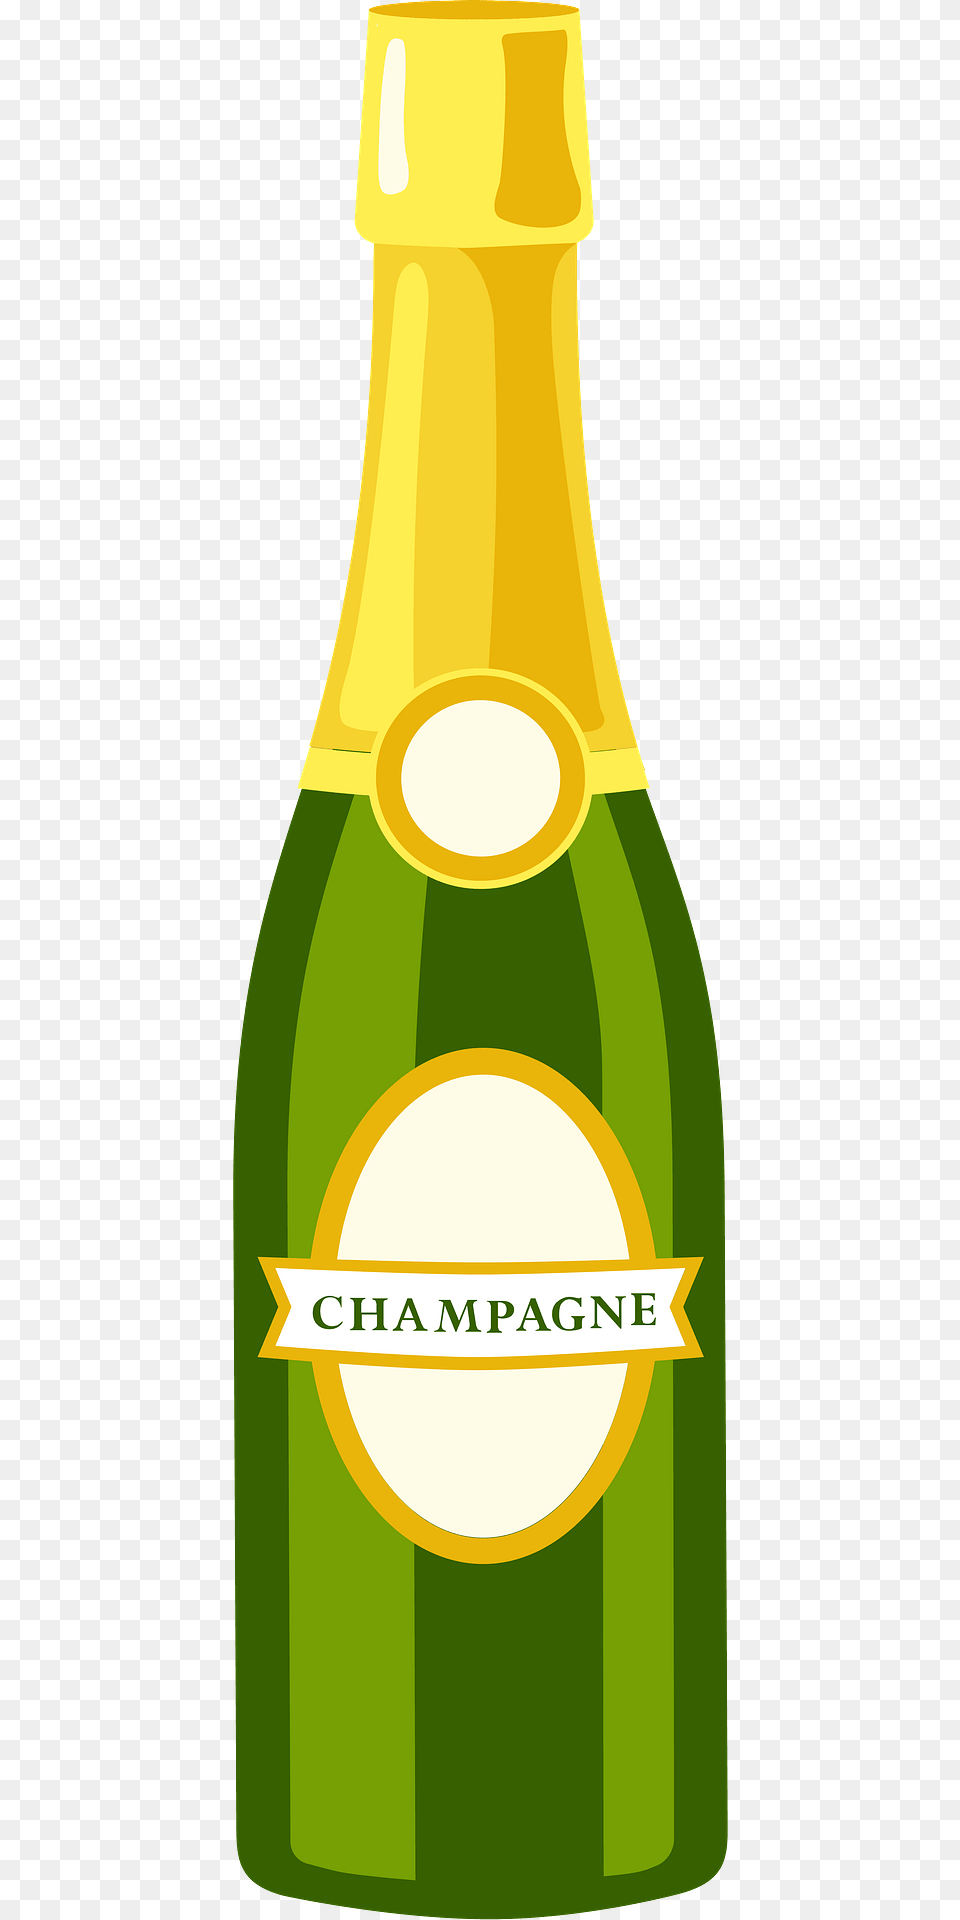 Champagne Bottle Clipart, Alcohol, Beer, Beverage, Beer Bottle Free Png